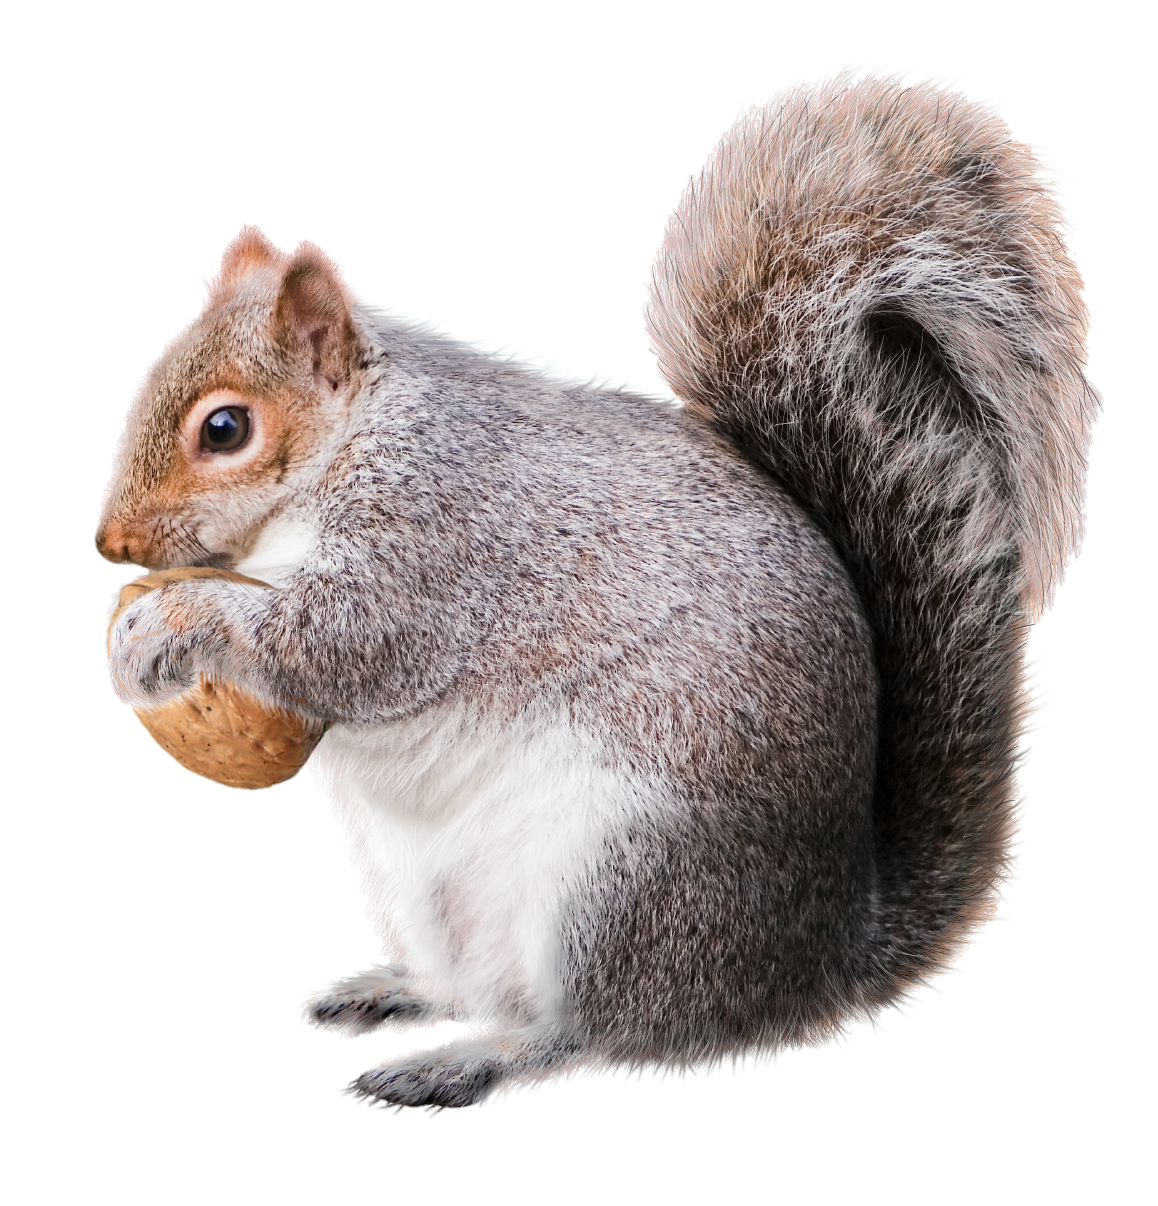 Squirrel-13